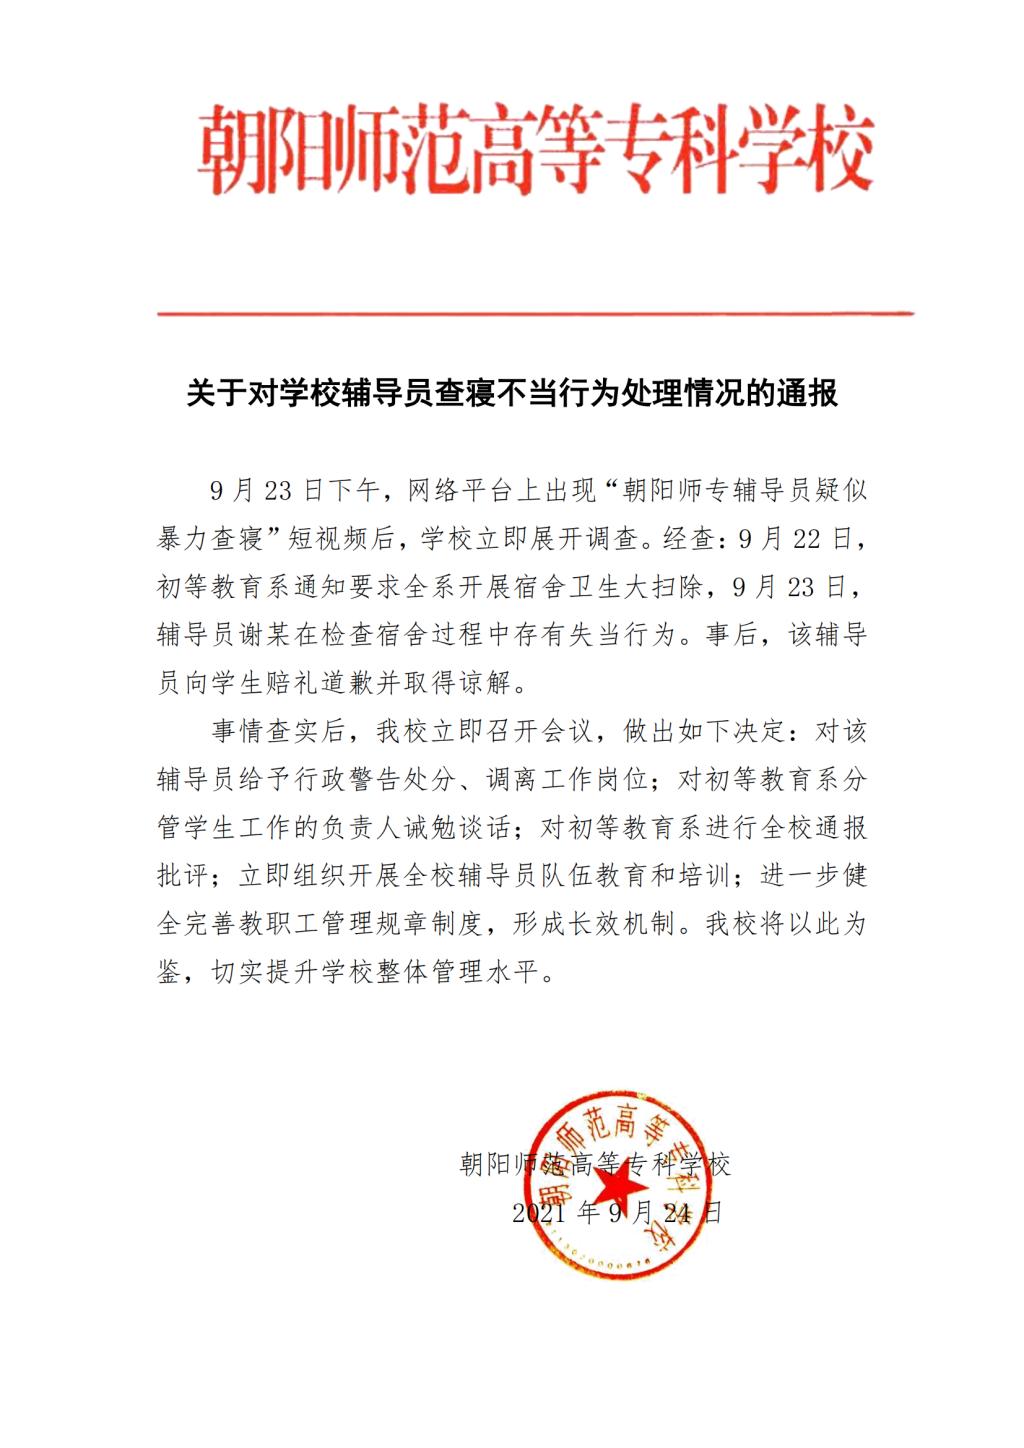 西安出轨调查公司_出轨调查公司_上海婚内出轨调查公司